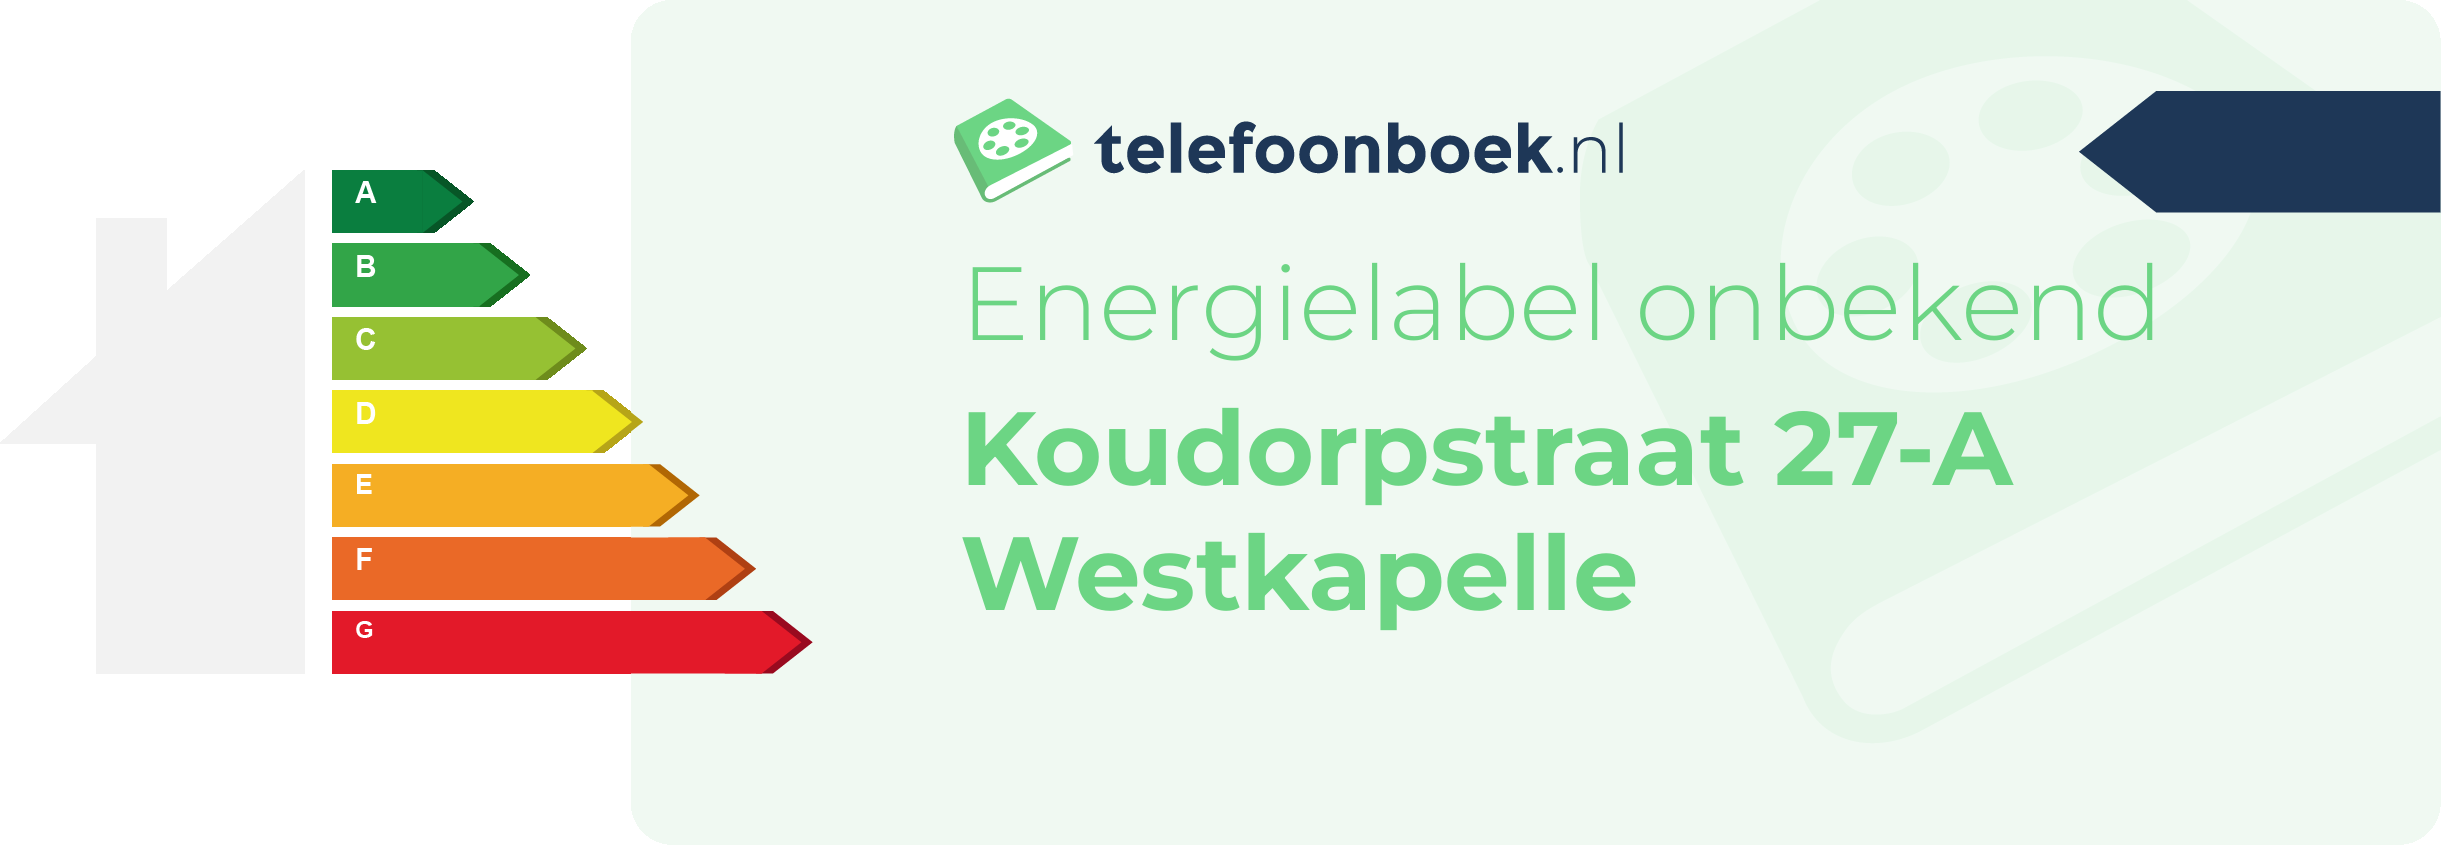 Energielabel Koudorpstraat 27-A Westkapelle